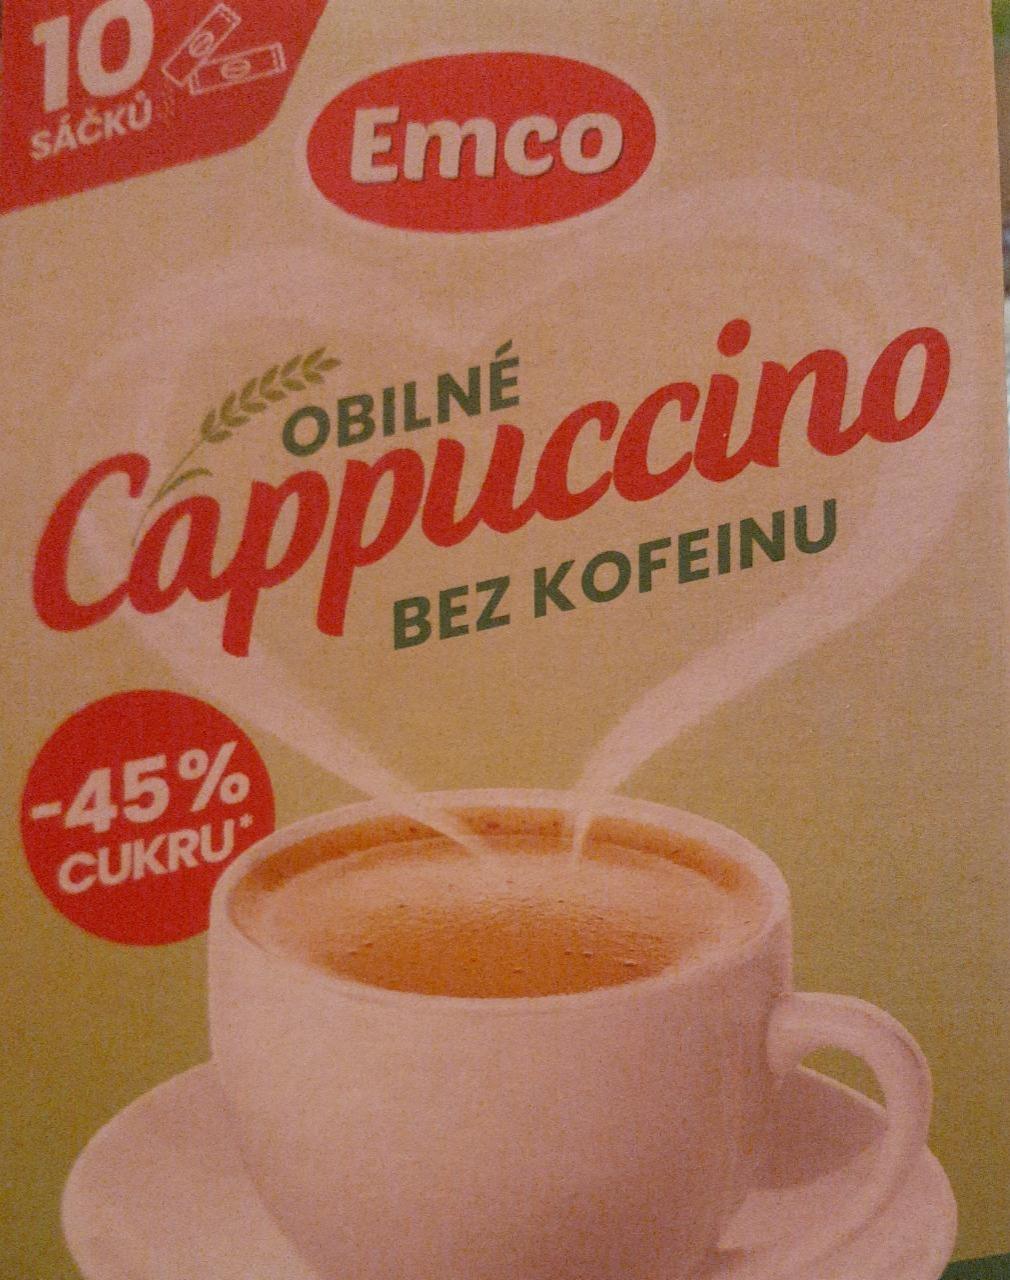 Fotografie - Obilné Cappuccino bez kofeinu Emco